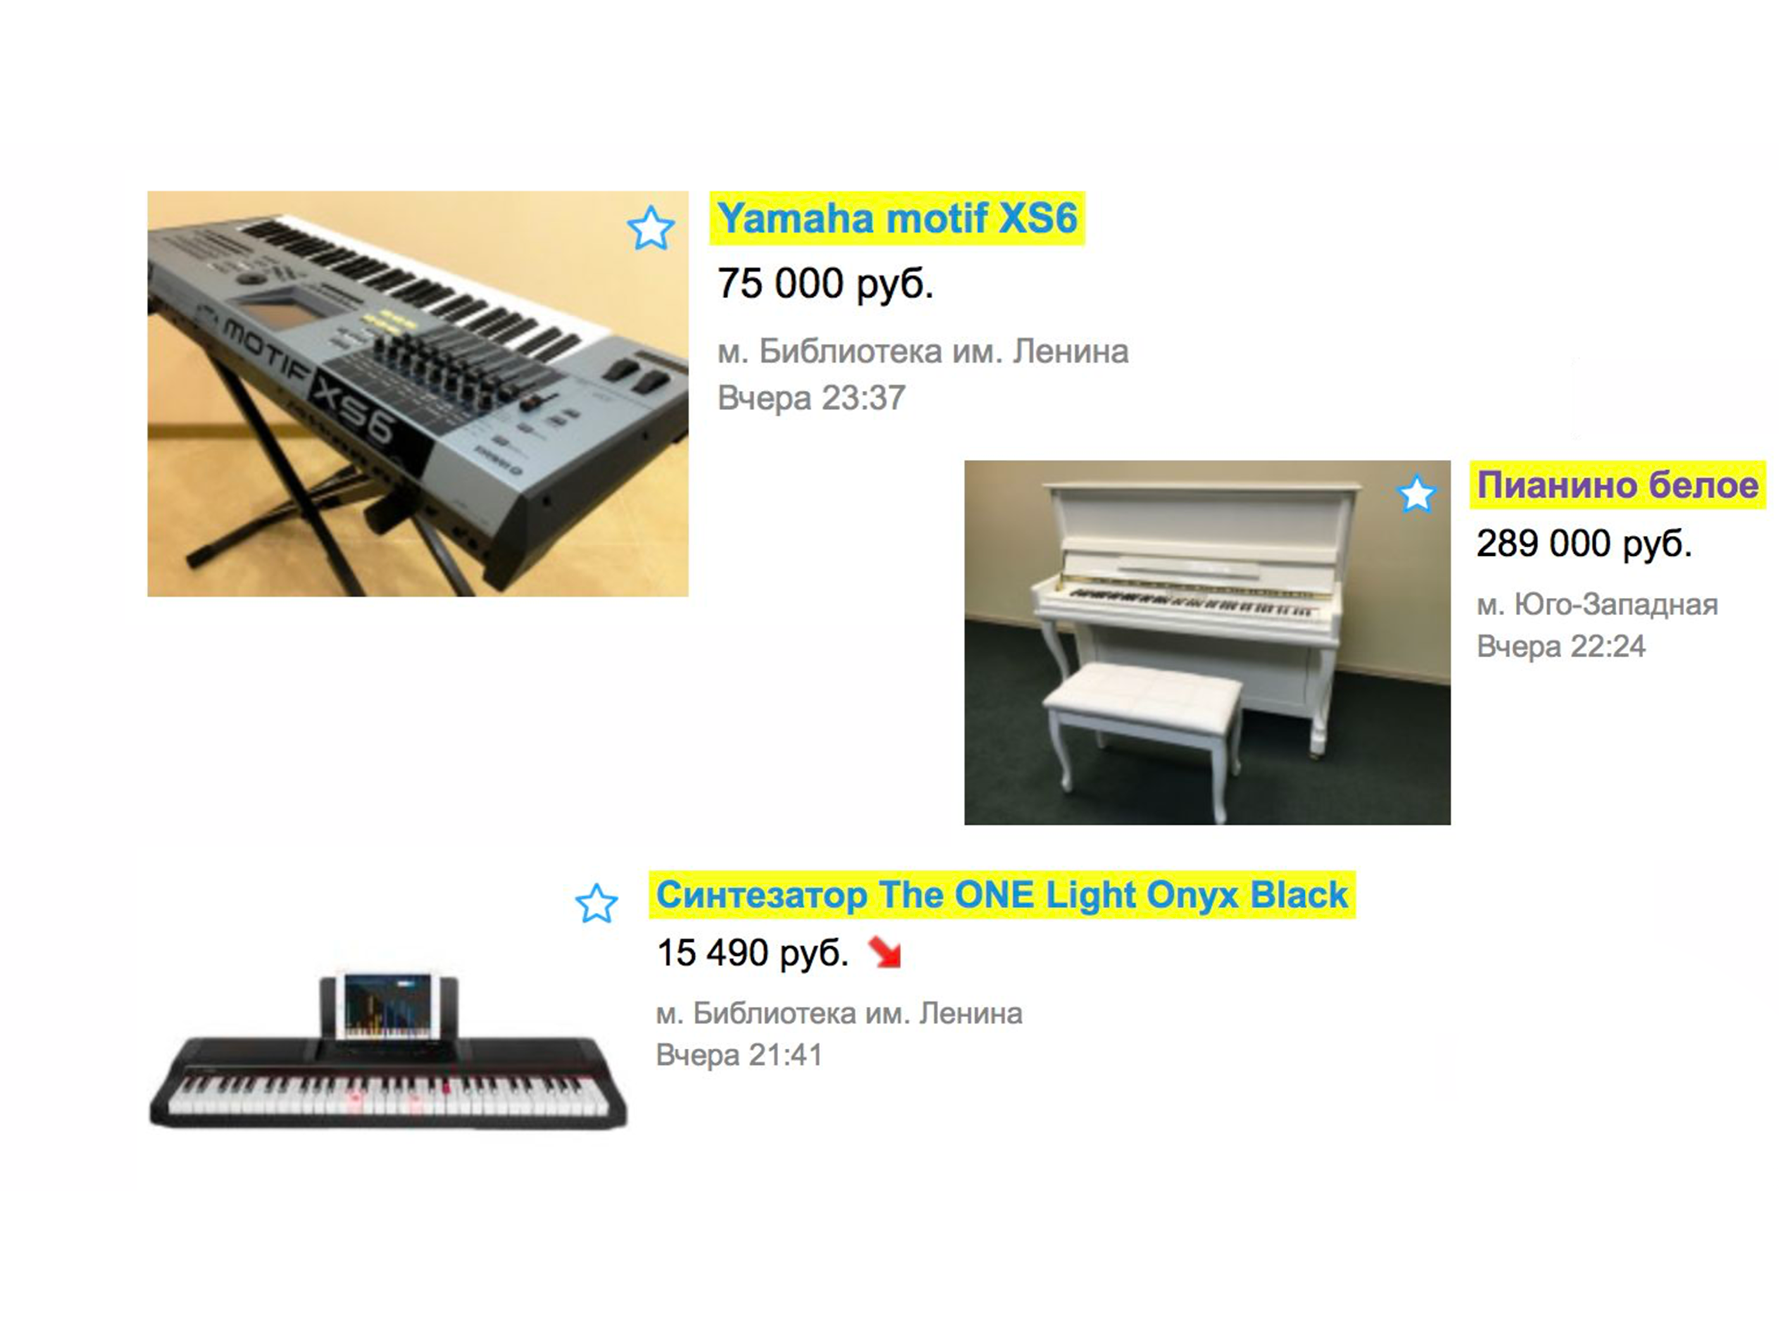 Эволюция поиска — как купить пианино в три клика - 7